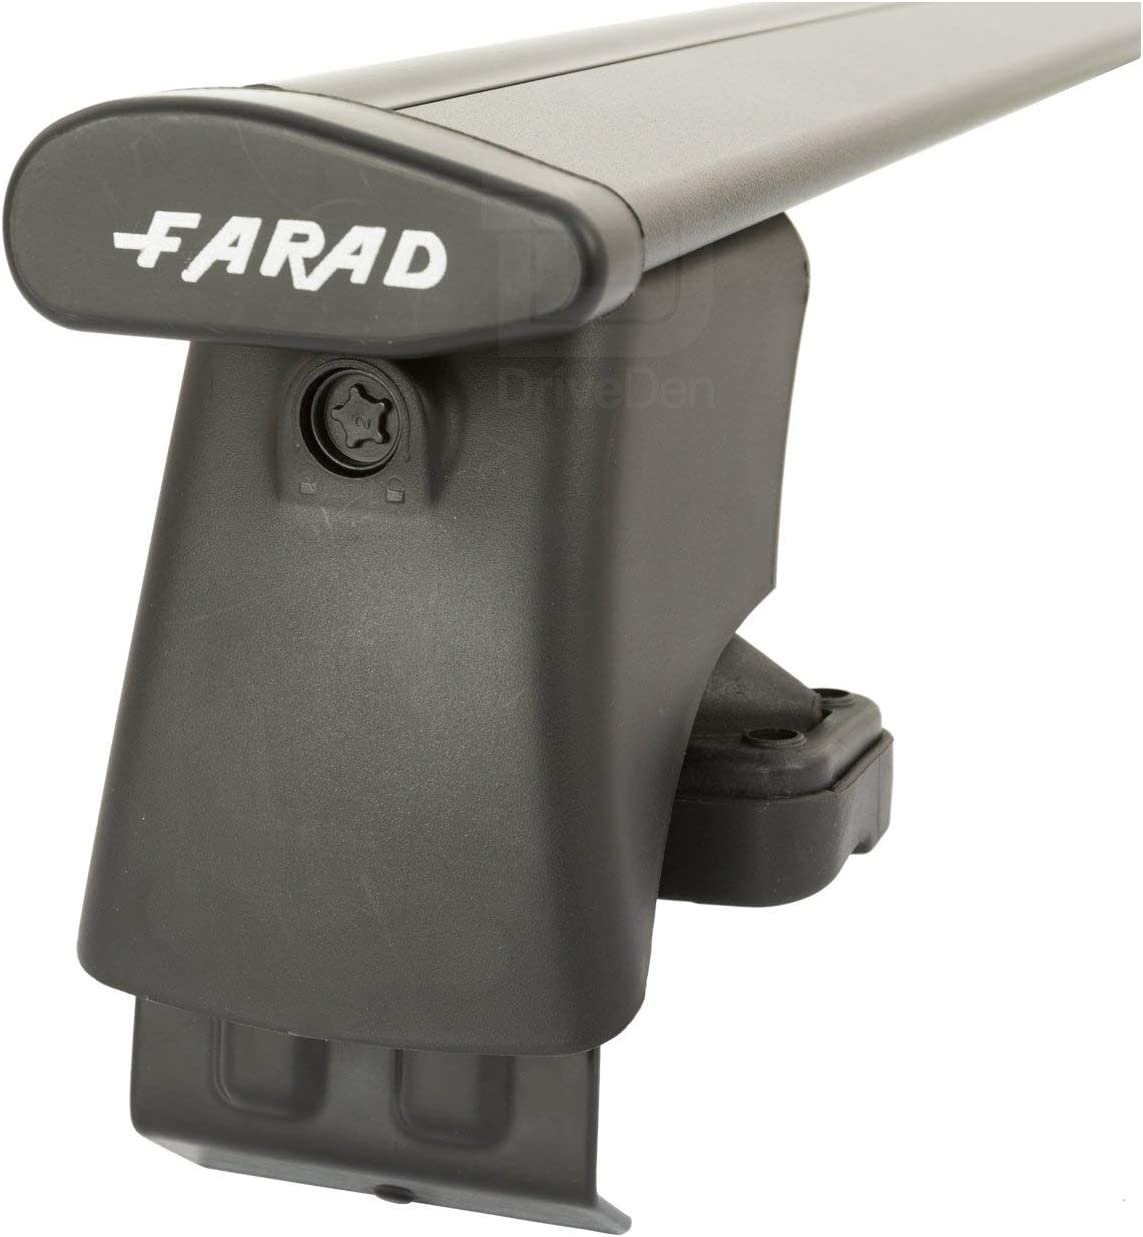 FARAD-Kit H2 per barre portatutto - Volkswagen Touareg 2010-2017 (senza corrimano)